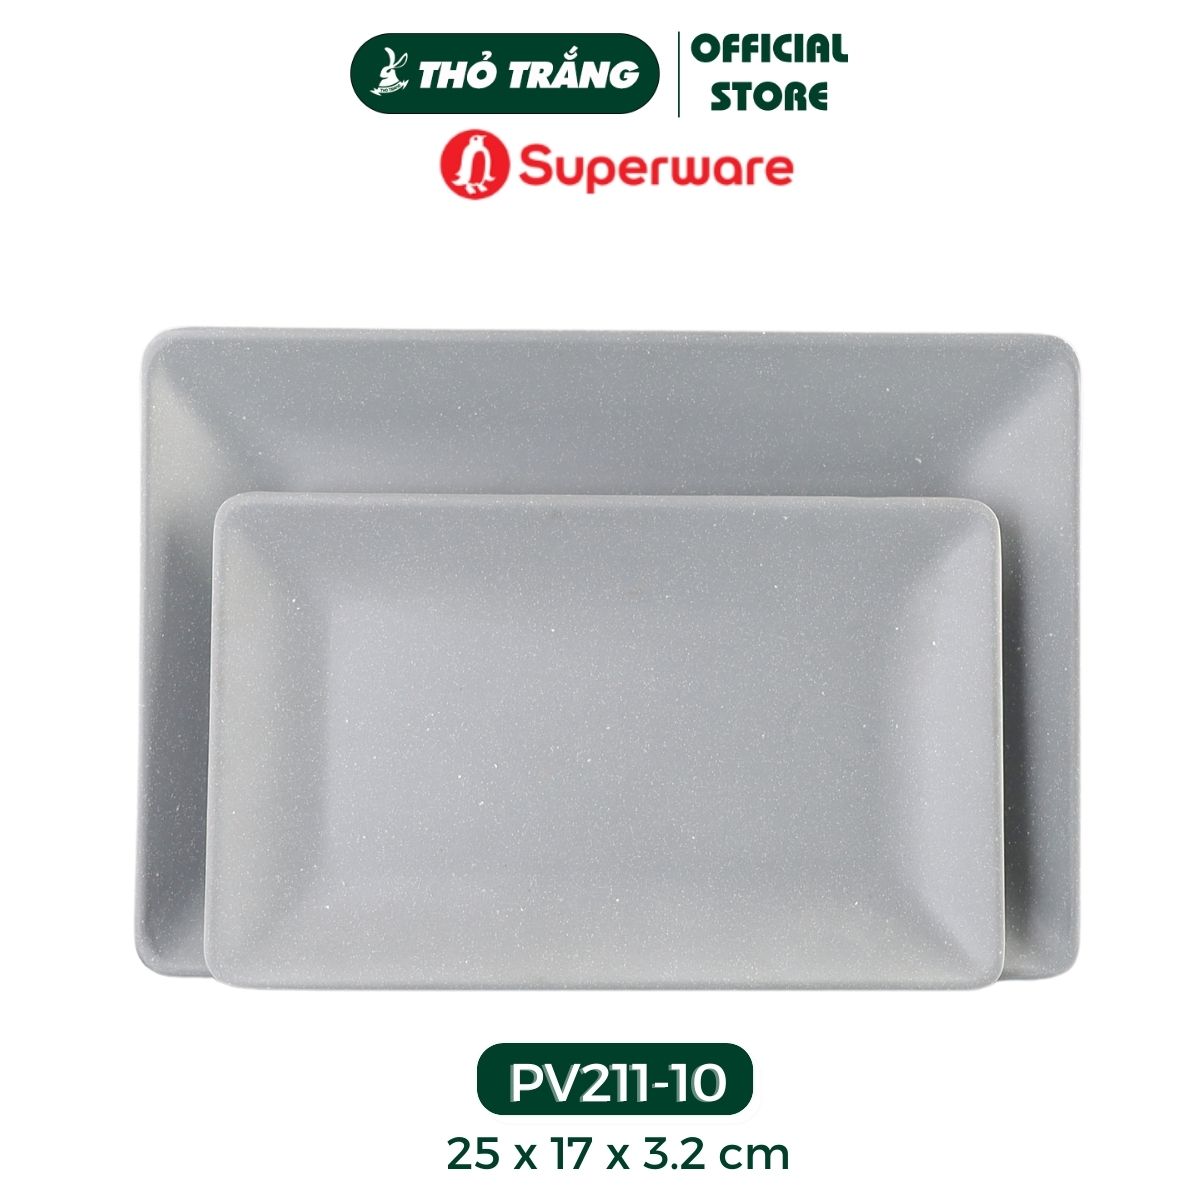 Dĩa chữ nhật nhựa Melamine màu xanh đá thương hiệu Superware